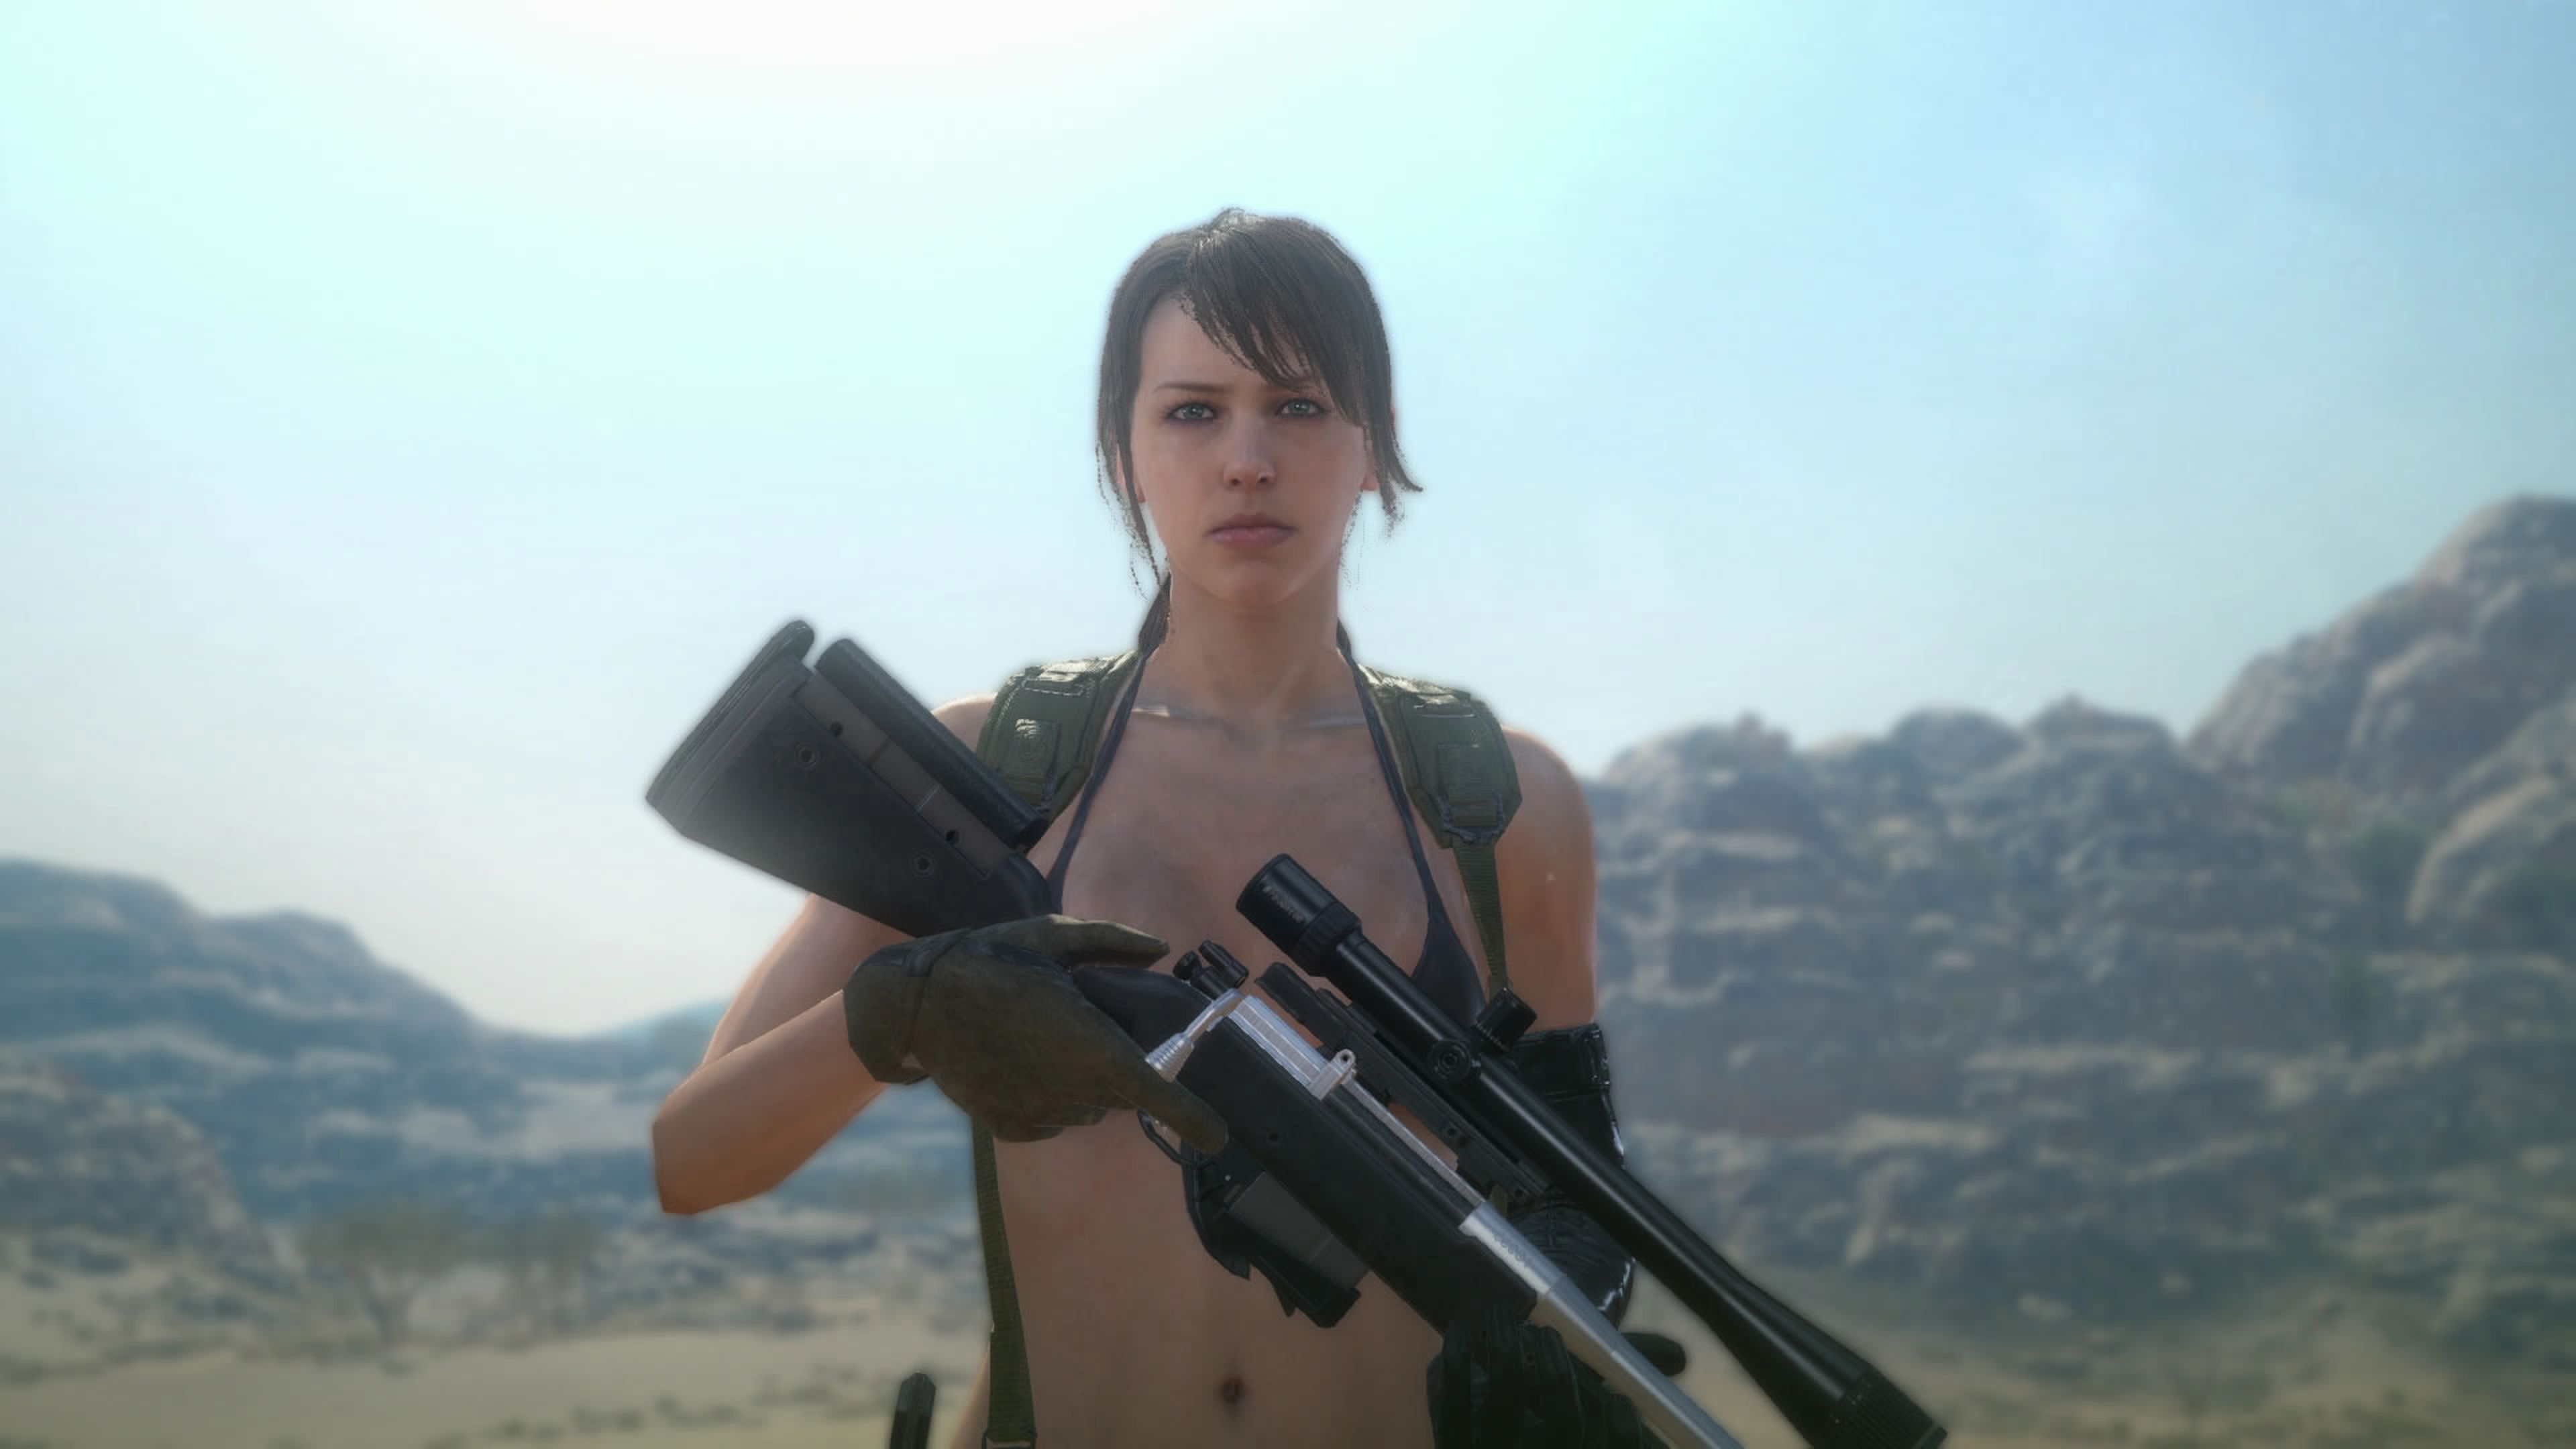 Metal Gear Solid V The Phantom Pain corrige el bug de Quiet en PS4 y PC con un nuevo parche